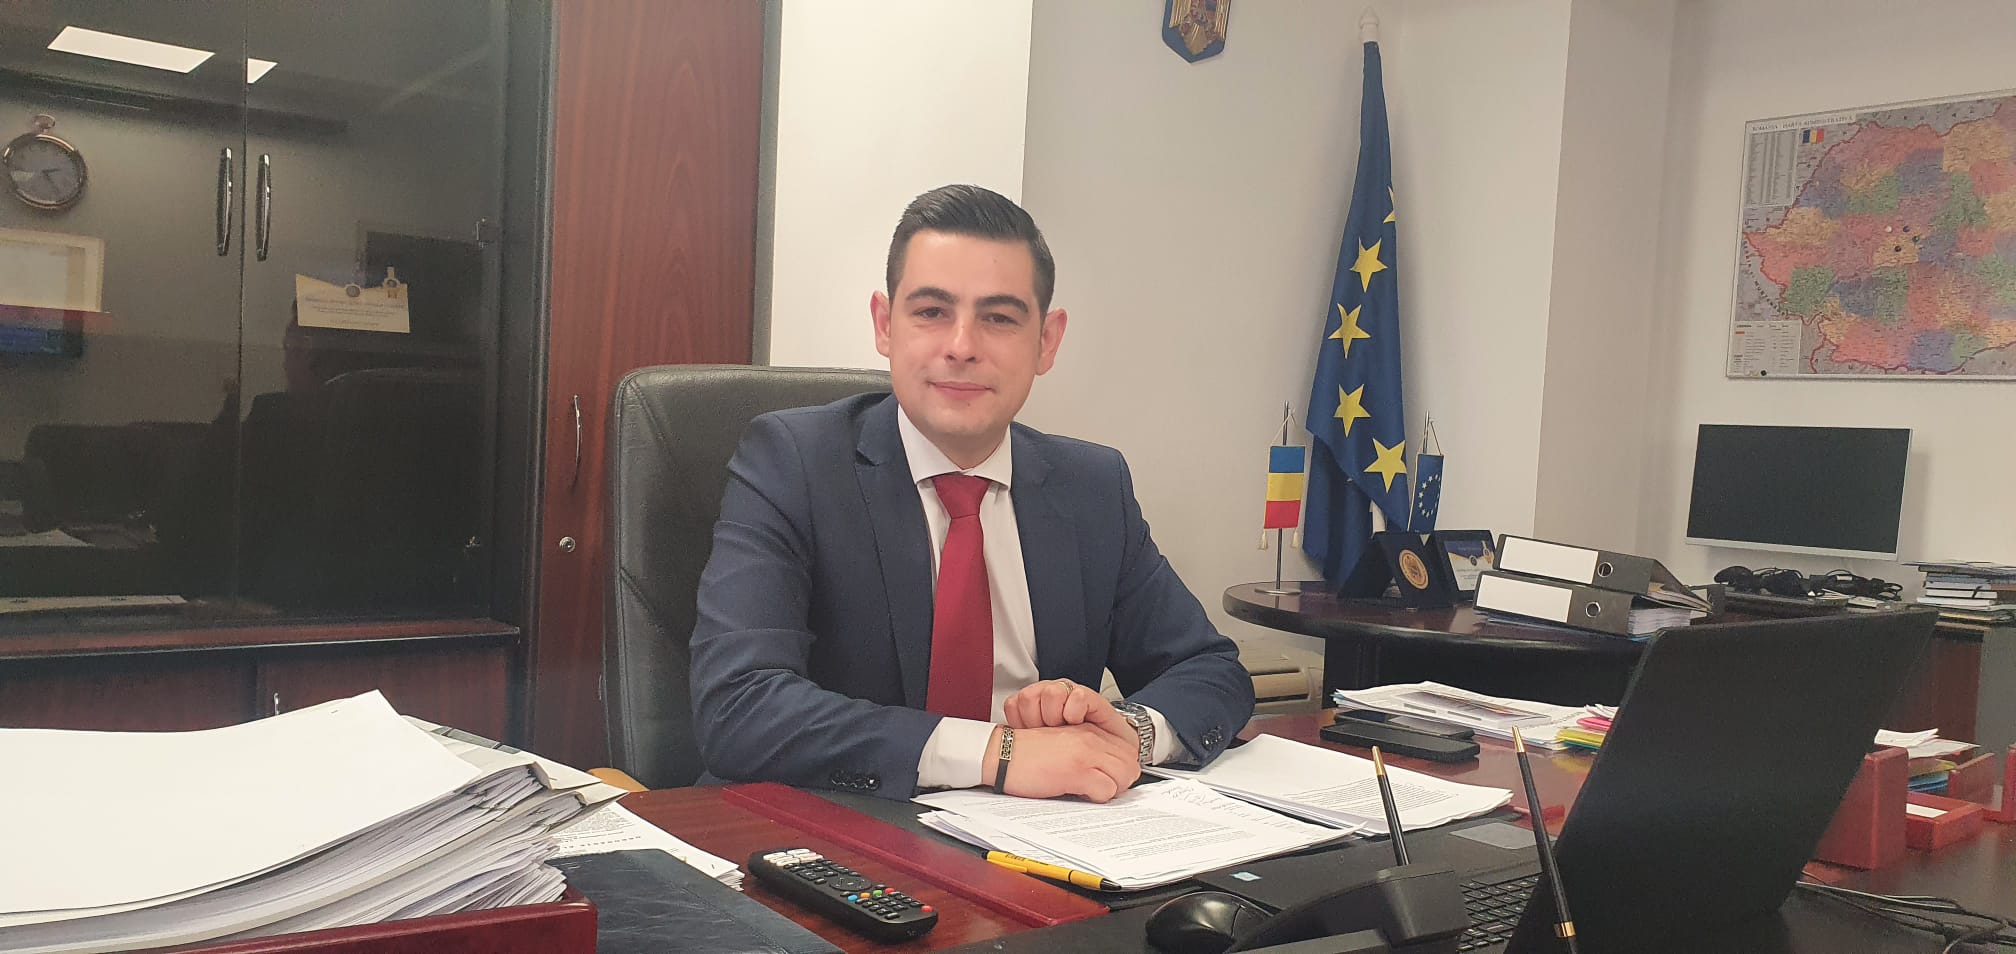 Alexandru Stănilă, șeful ITM Sibiu: Angajatorii sibieni au o problemă mai mare decât pandemia